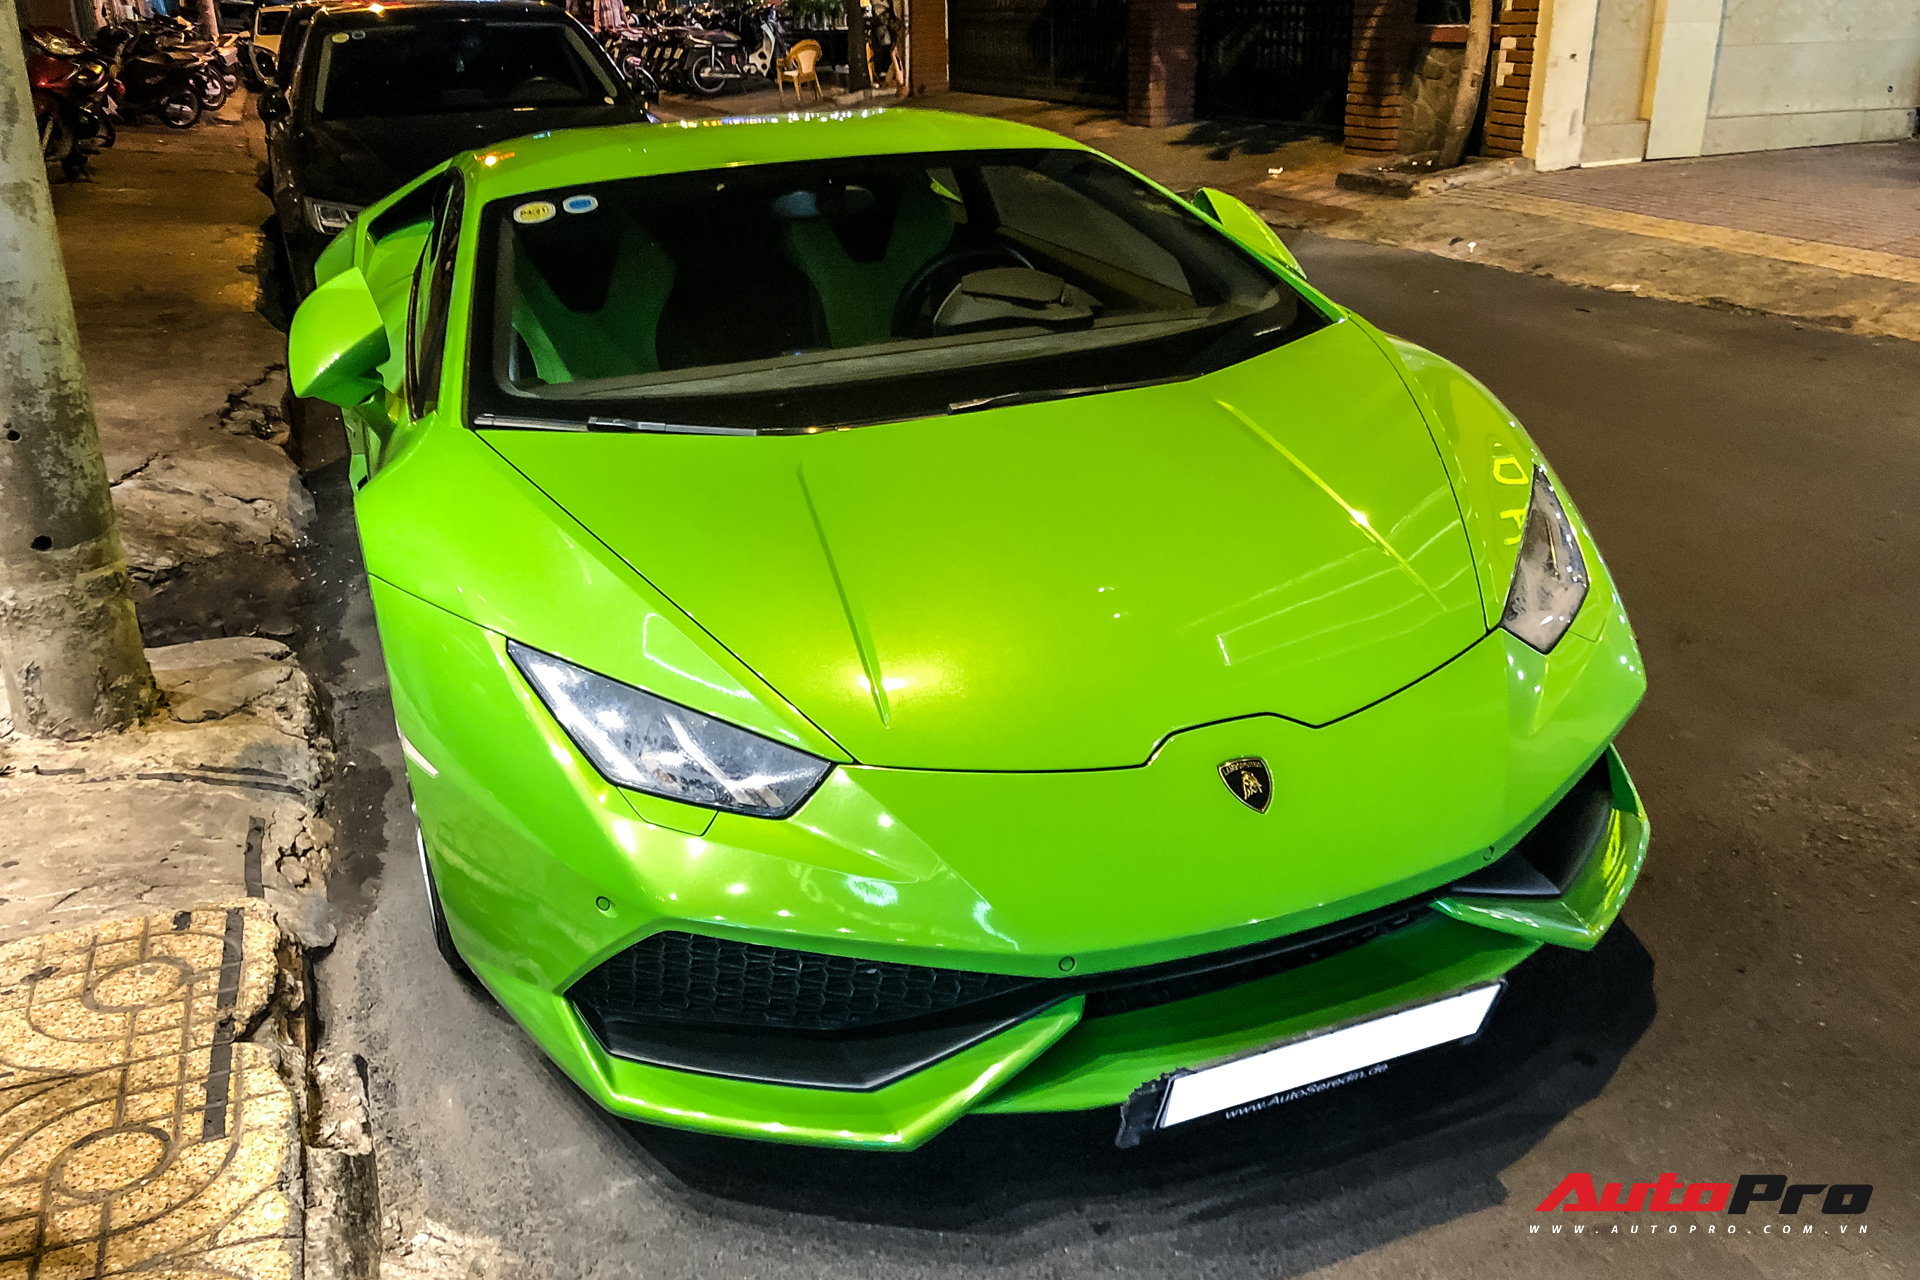 Không tham gia vào hành trình siêu xe, Phan Thành lặng lẽ cầm lái Lamborghini Huracan dạo phố đêm cuối tuần - Ảnh 2.